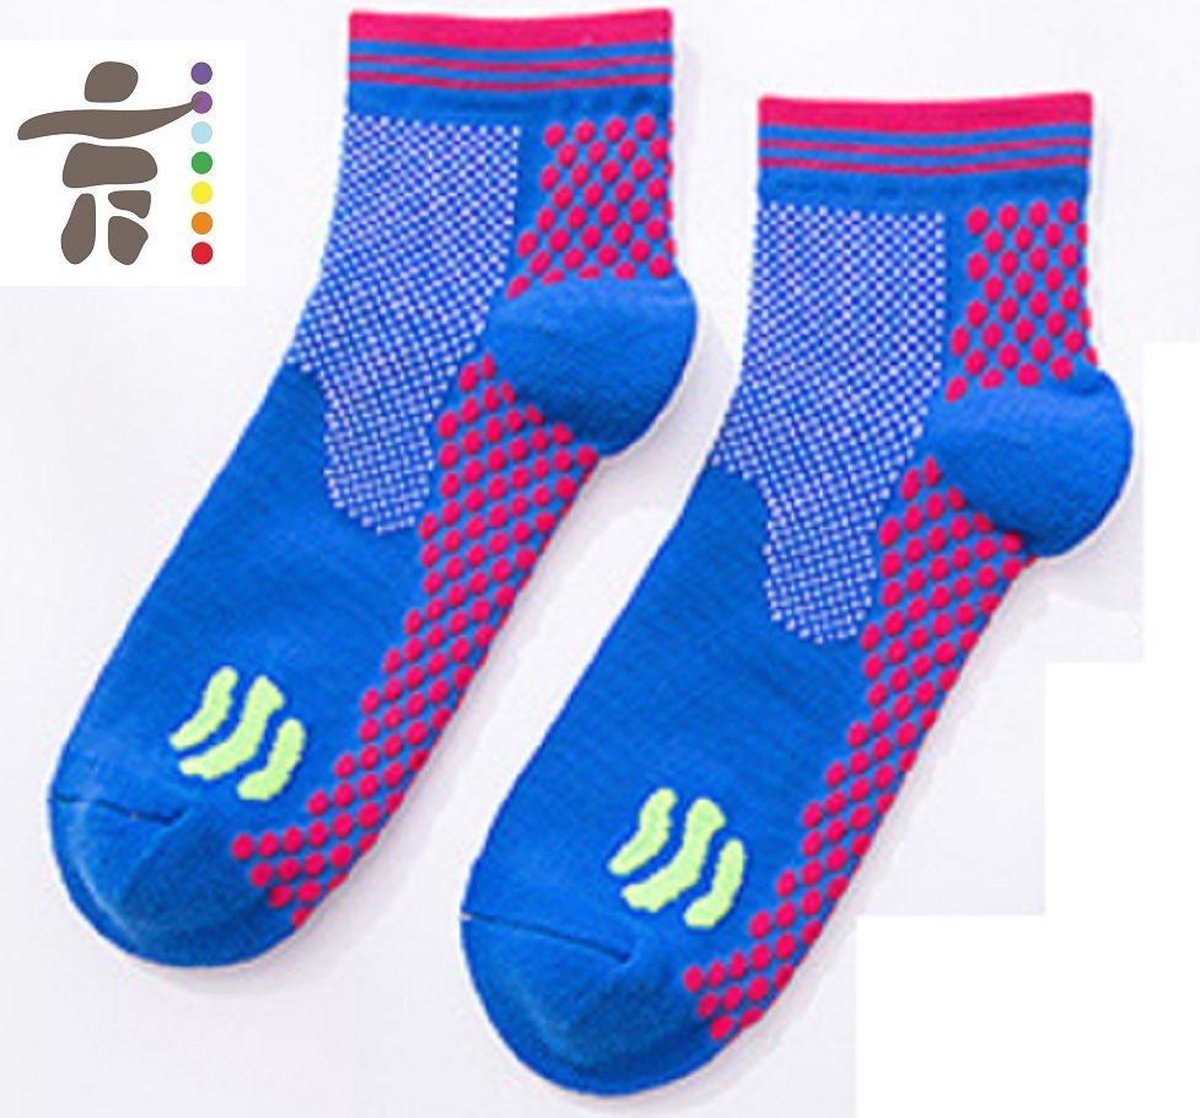 Inuk - Compressie sokken Sportsokken Blauw maat 40 - 43 - Unisex - Heerlijk warme voeten! - zit comfortable strak en compact - Naadloos en blijft geen nagel in hangen - Compressiesok